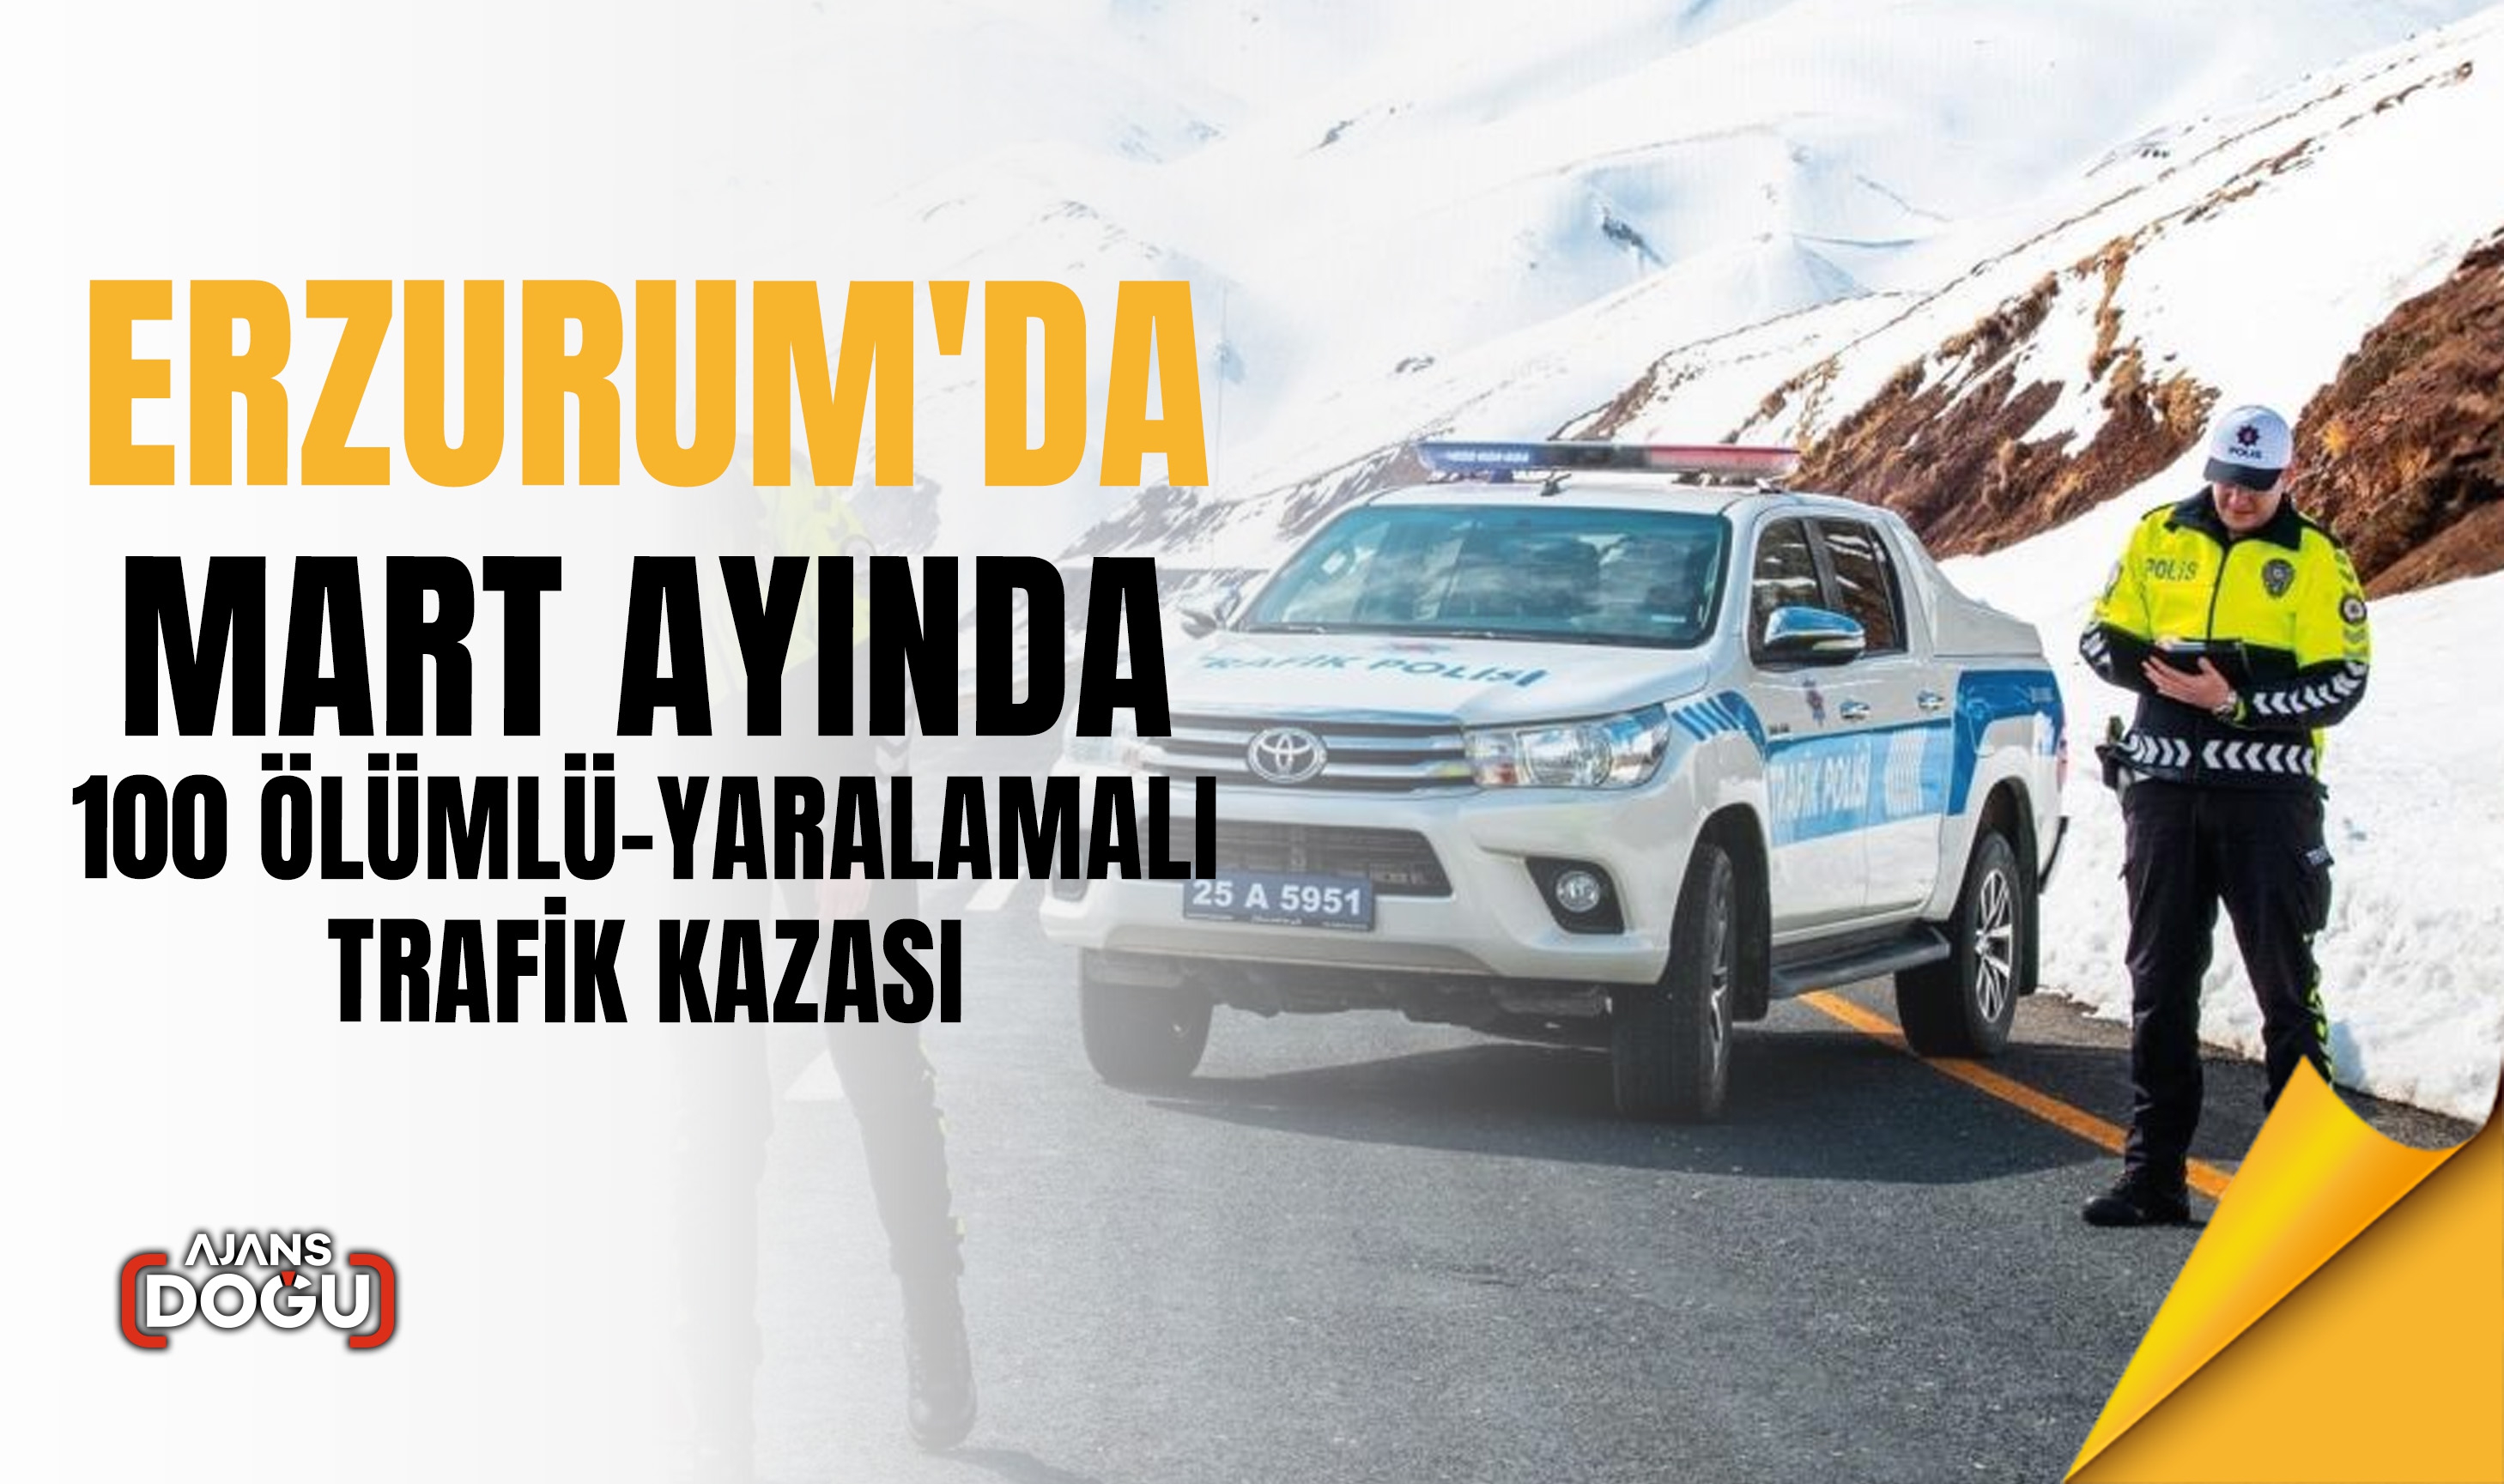 Erzurum'da Mart Ayında 100 Ölümlü-Yaralamalı Trafik Kazası: Maddi Hasarlar Öne Çıkıyor!